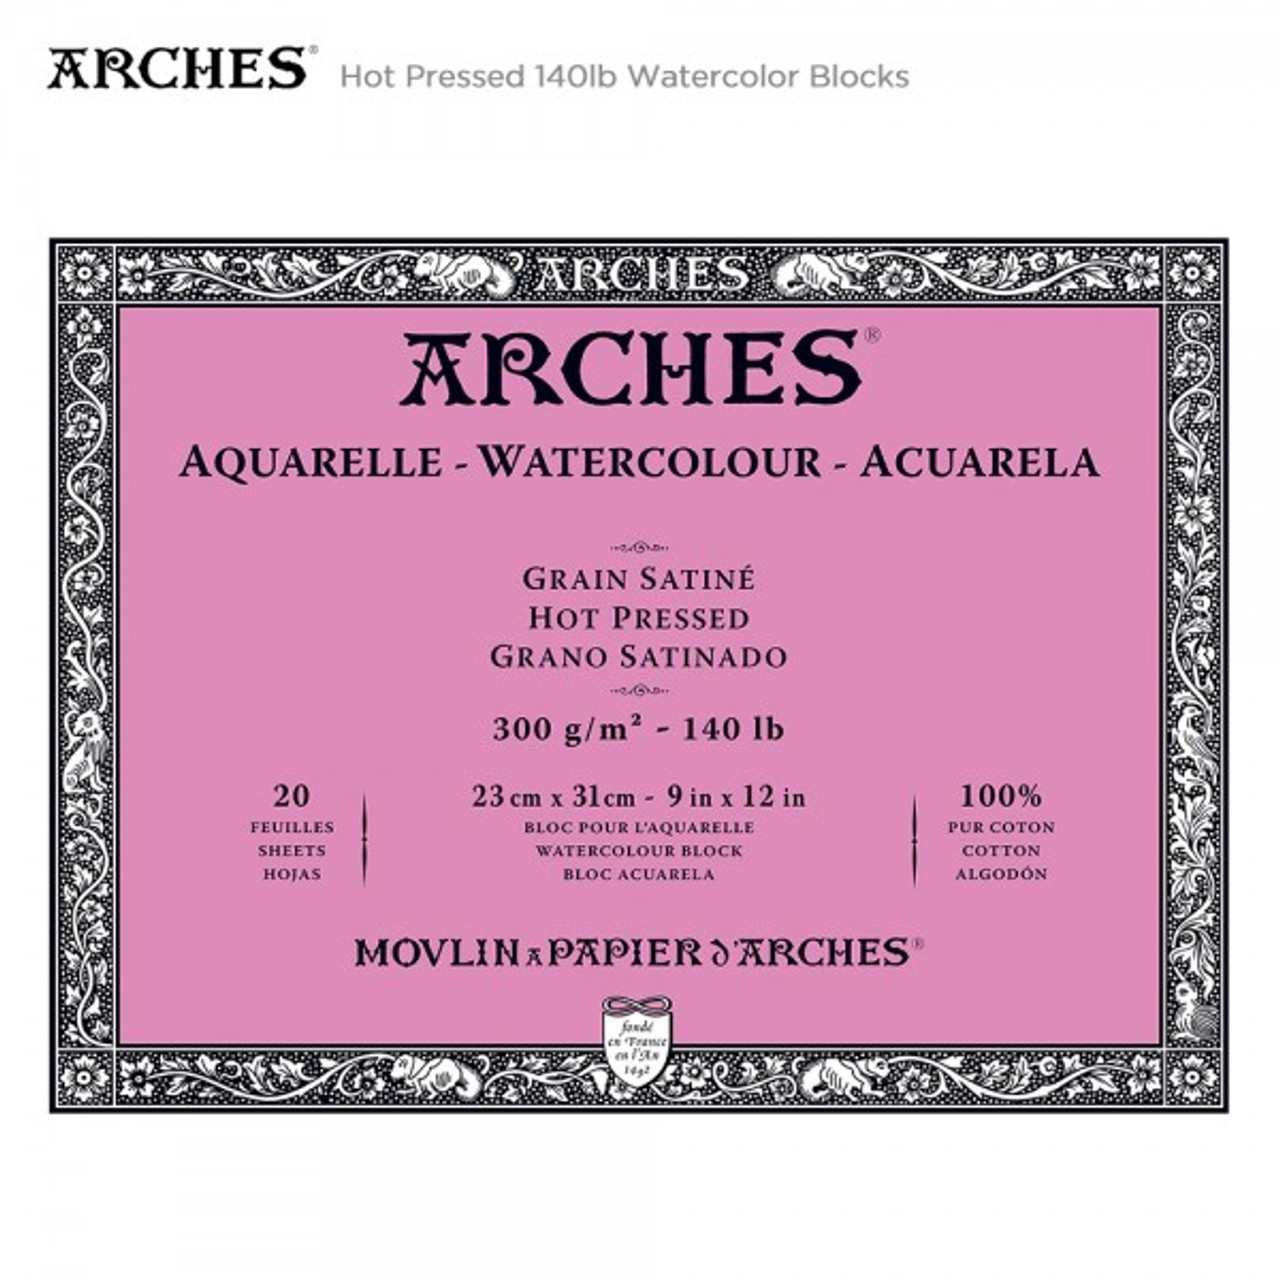 Arches Watercolour Block 300 lb. 12 x 16 Cold Press